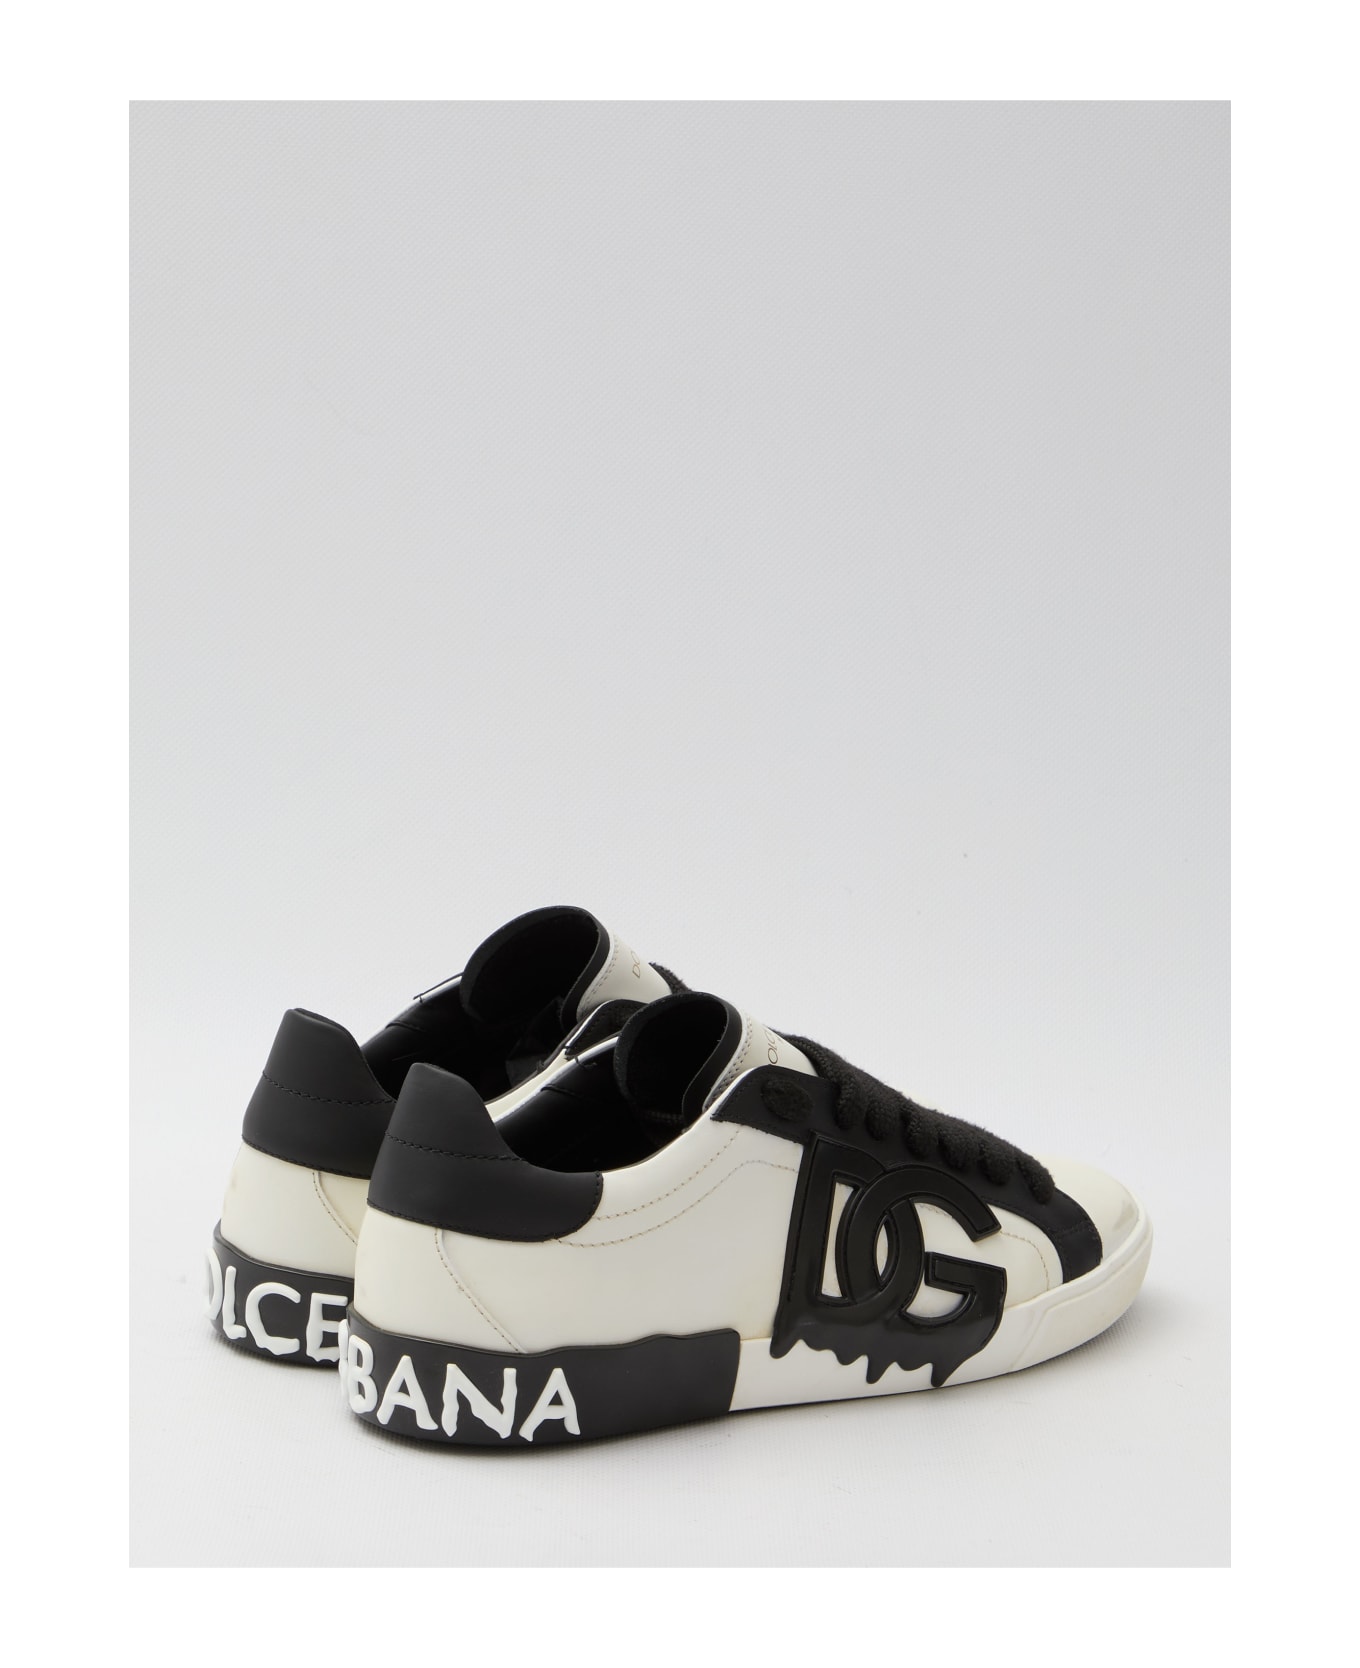 Dolce & Gabbana Portofino Vintage Sneakers - WHITE/BLACK スニーカー